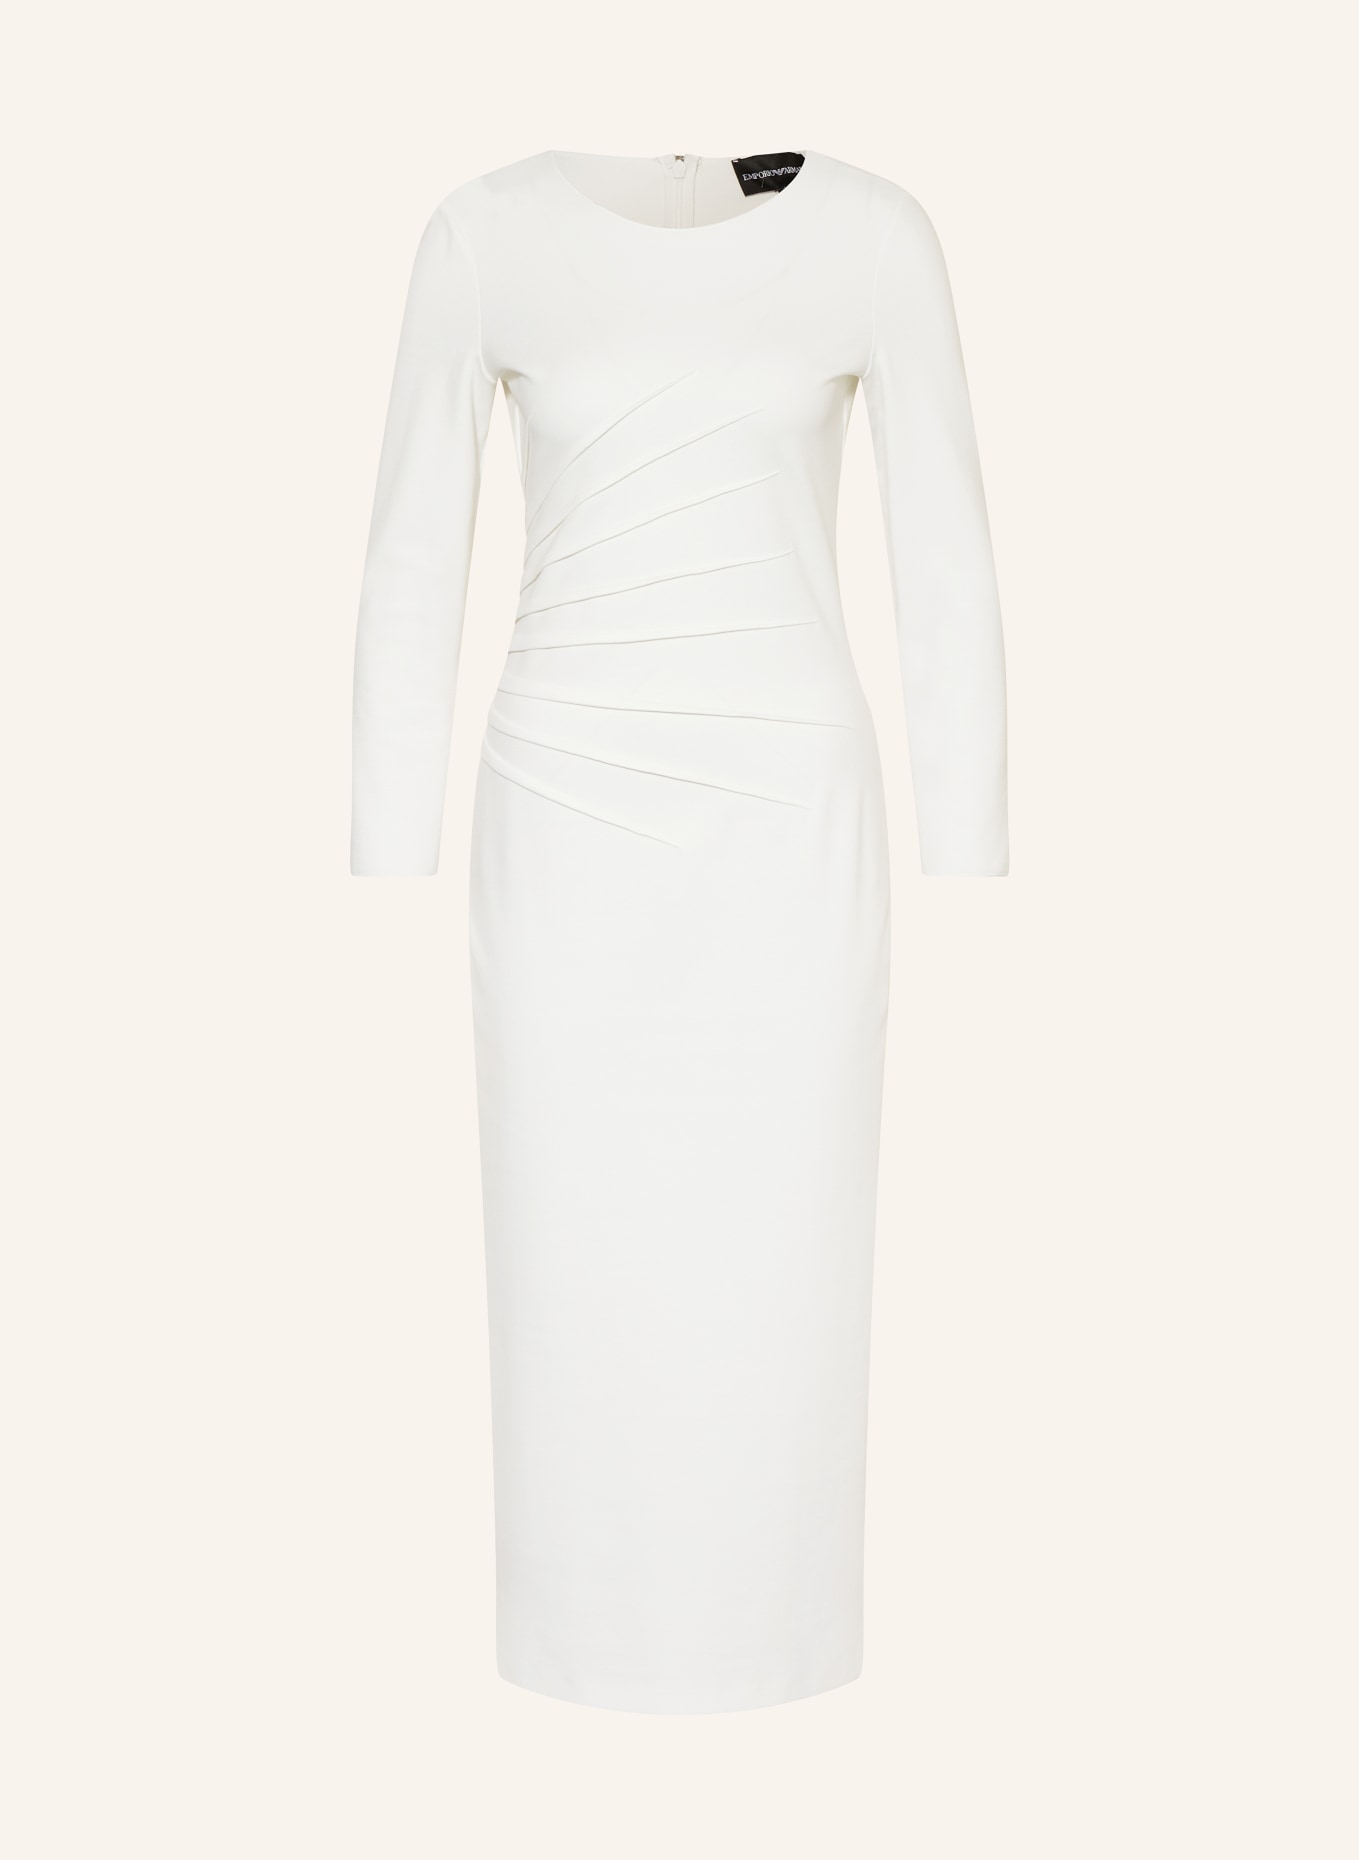 EMPORIO ARMANI Sheath dress in jersey, Color: WHITE (Image 1)